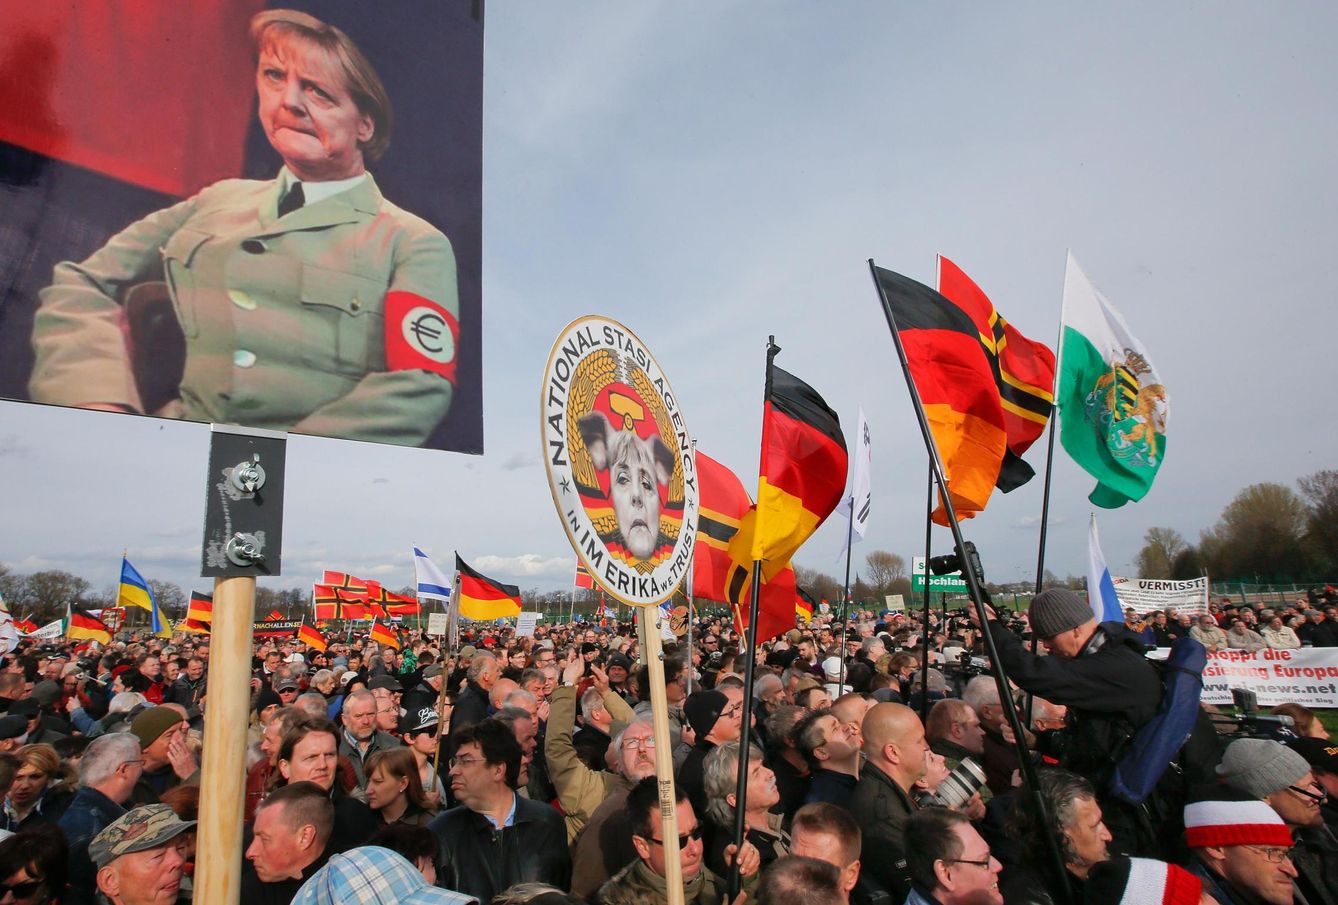 Simpatizantes del movimiento Pegida escuchan un discurso durante una manifestación en Dresde. (Reuters)